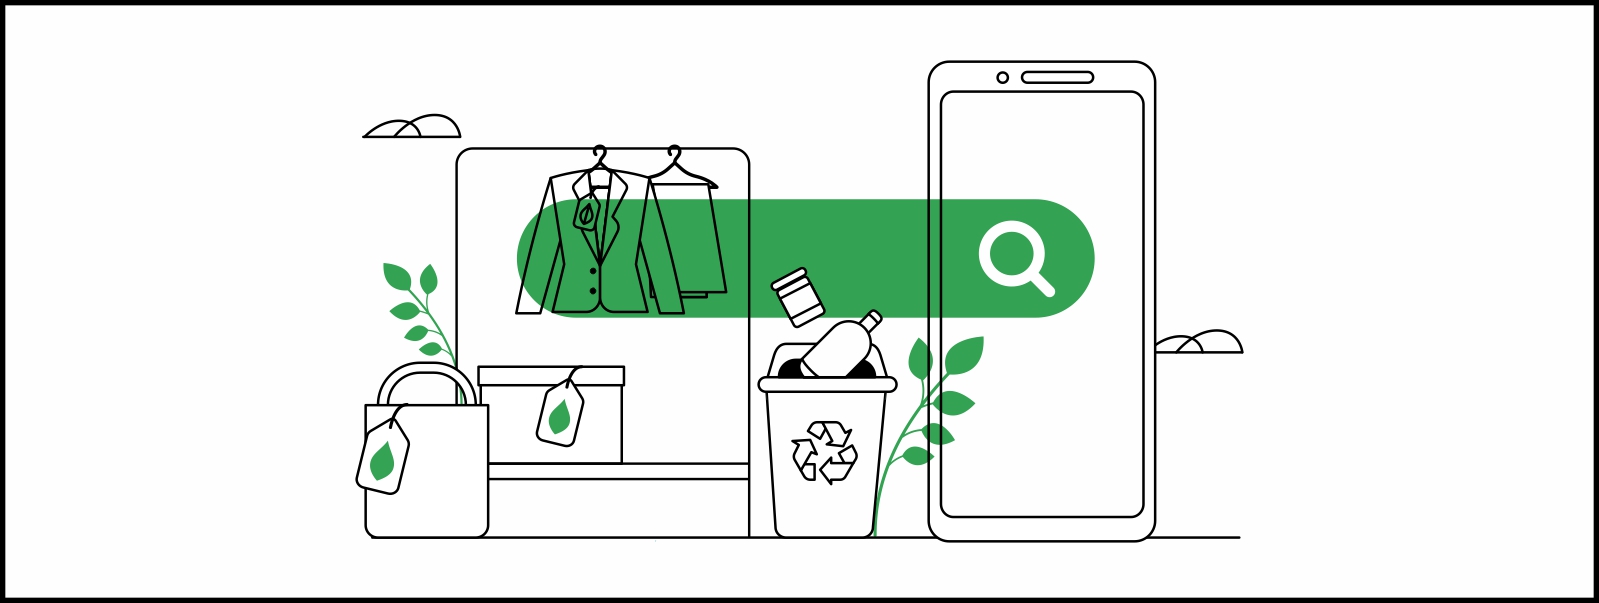 Una pantalla de un móvil detrás de una barra verde de Búsqueda y una lupa blanca. A su izquierda, un tacho de basura con el símbolo de reciclables, algunas ramas verdes, dos bolsas con una etiqueta verde.